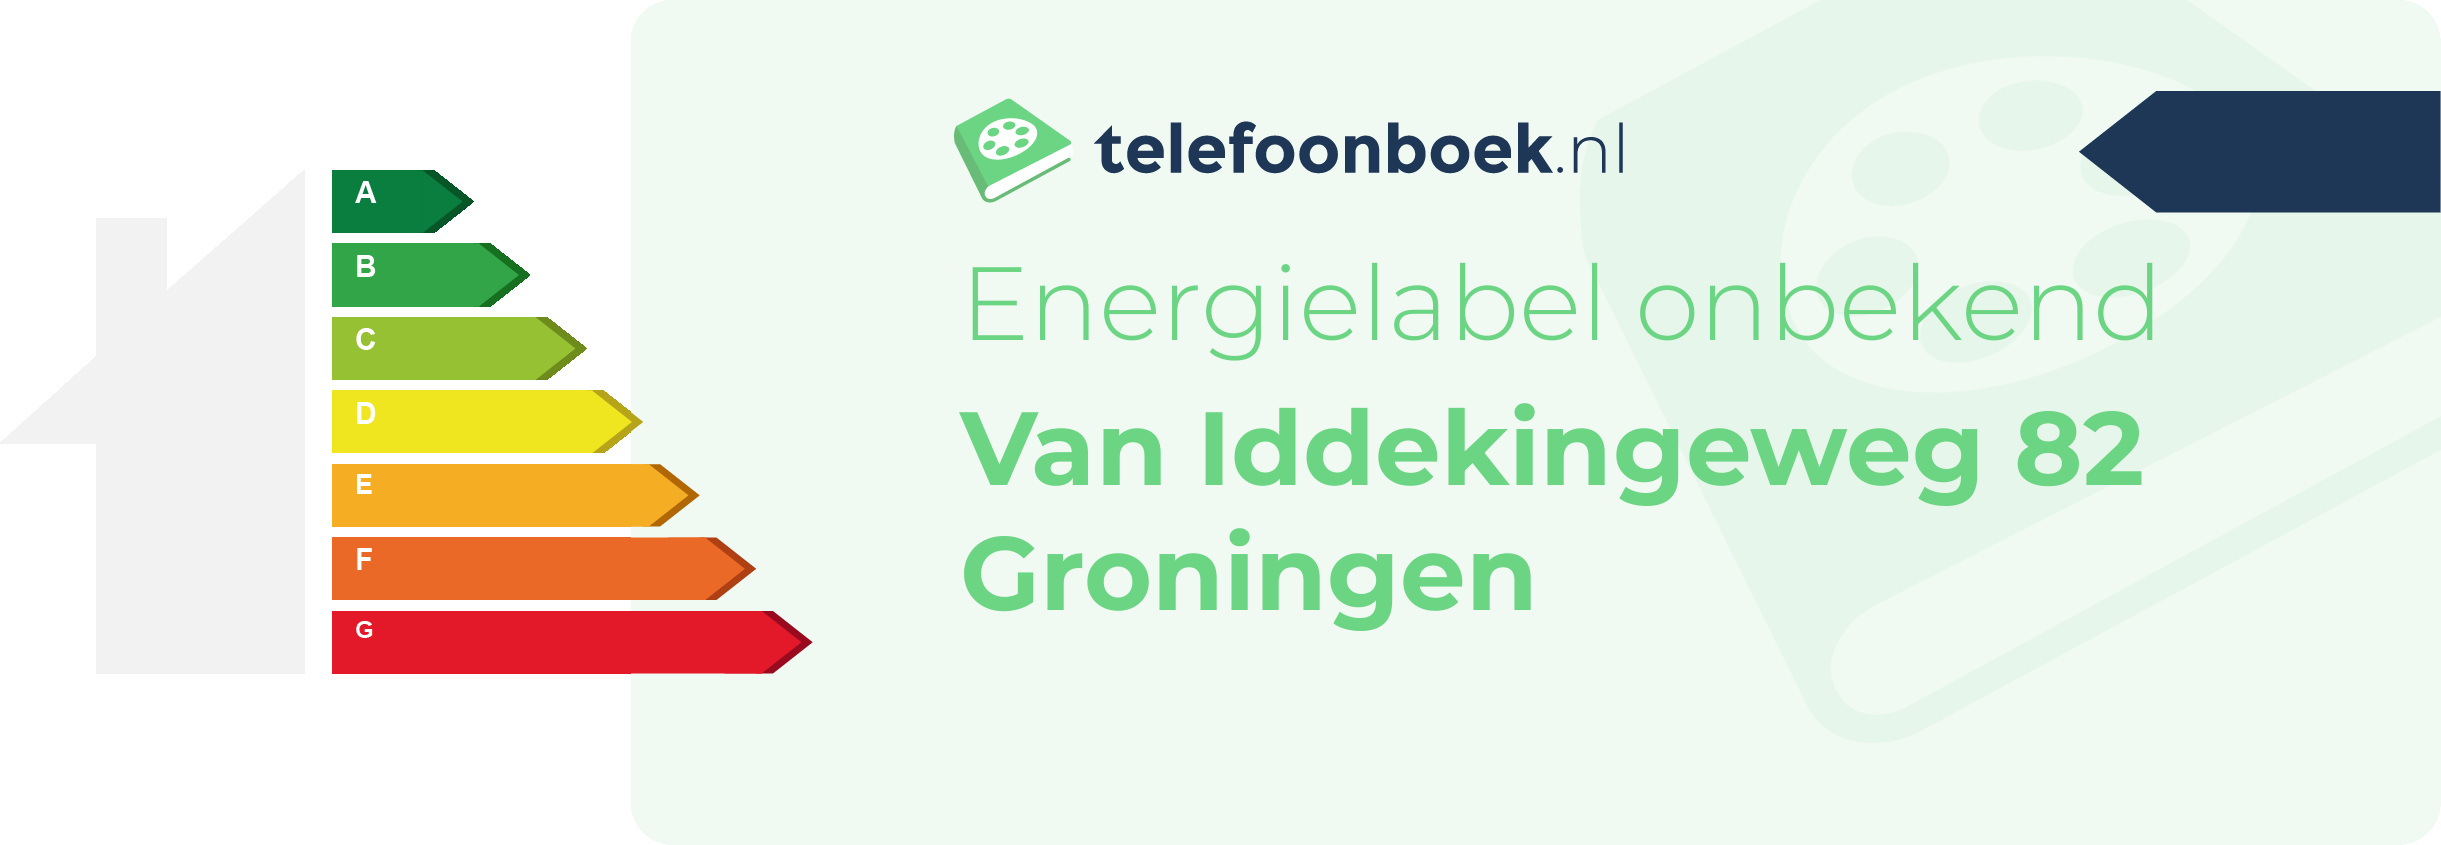 Energielabel Van Iddekingeweg 82 Groningen